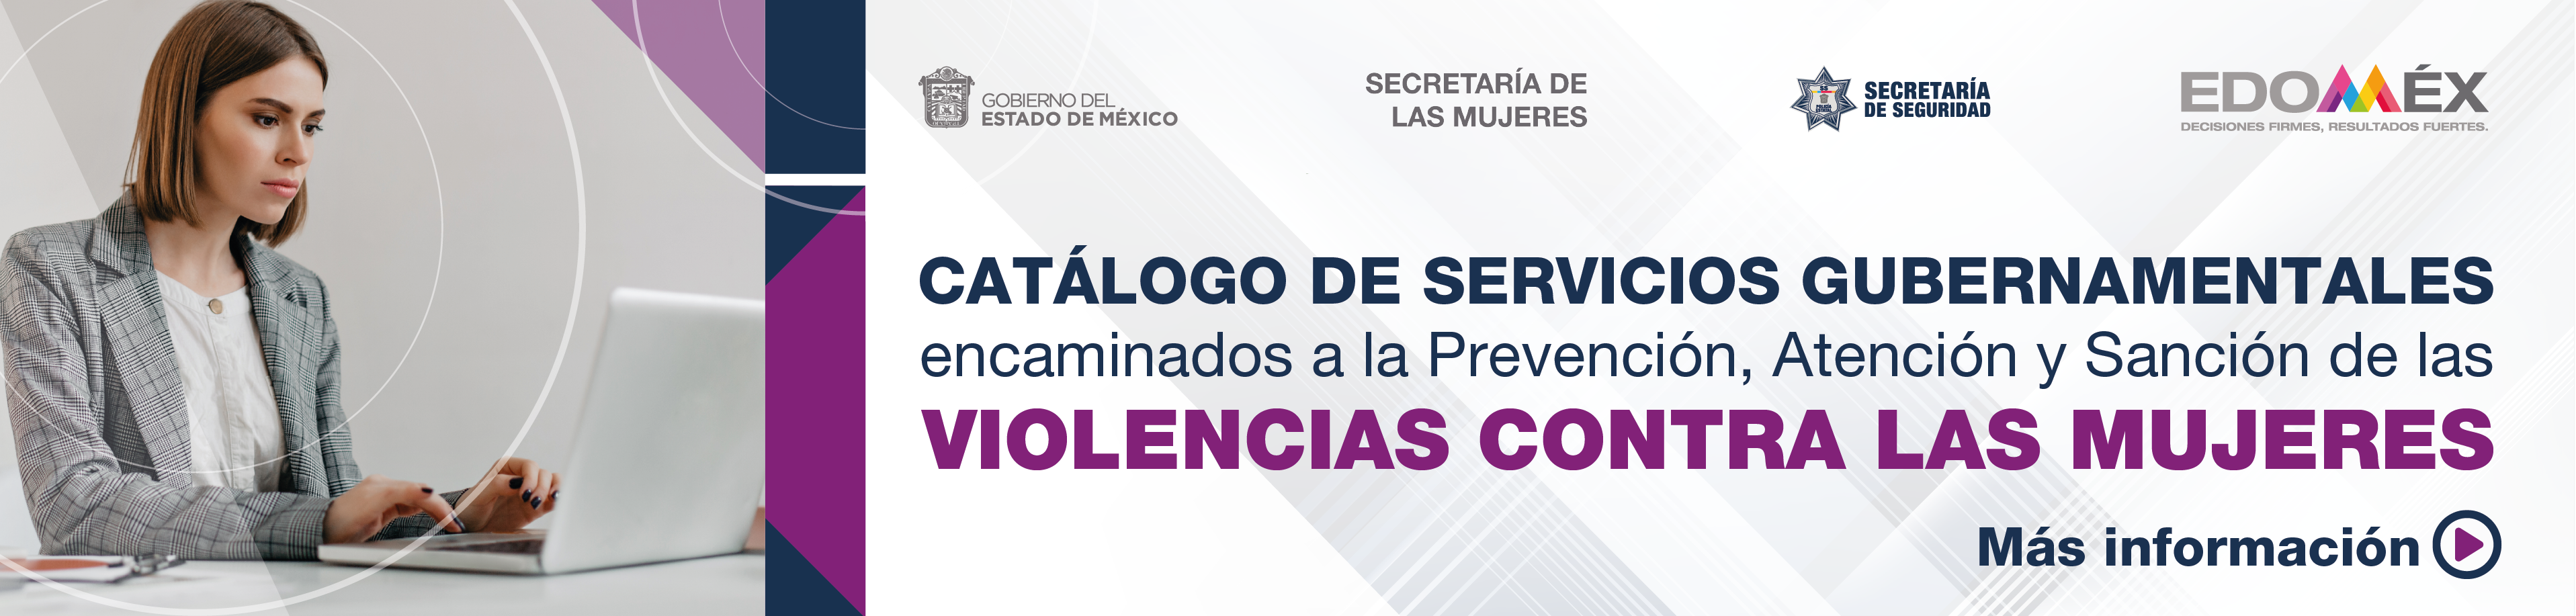 Catálogo de Servicios Gubernamentales encaminados a la Prevención, Atención y Sanción de las Violencias contra las Mujeres